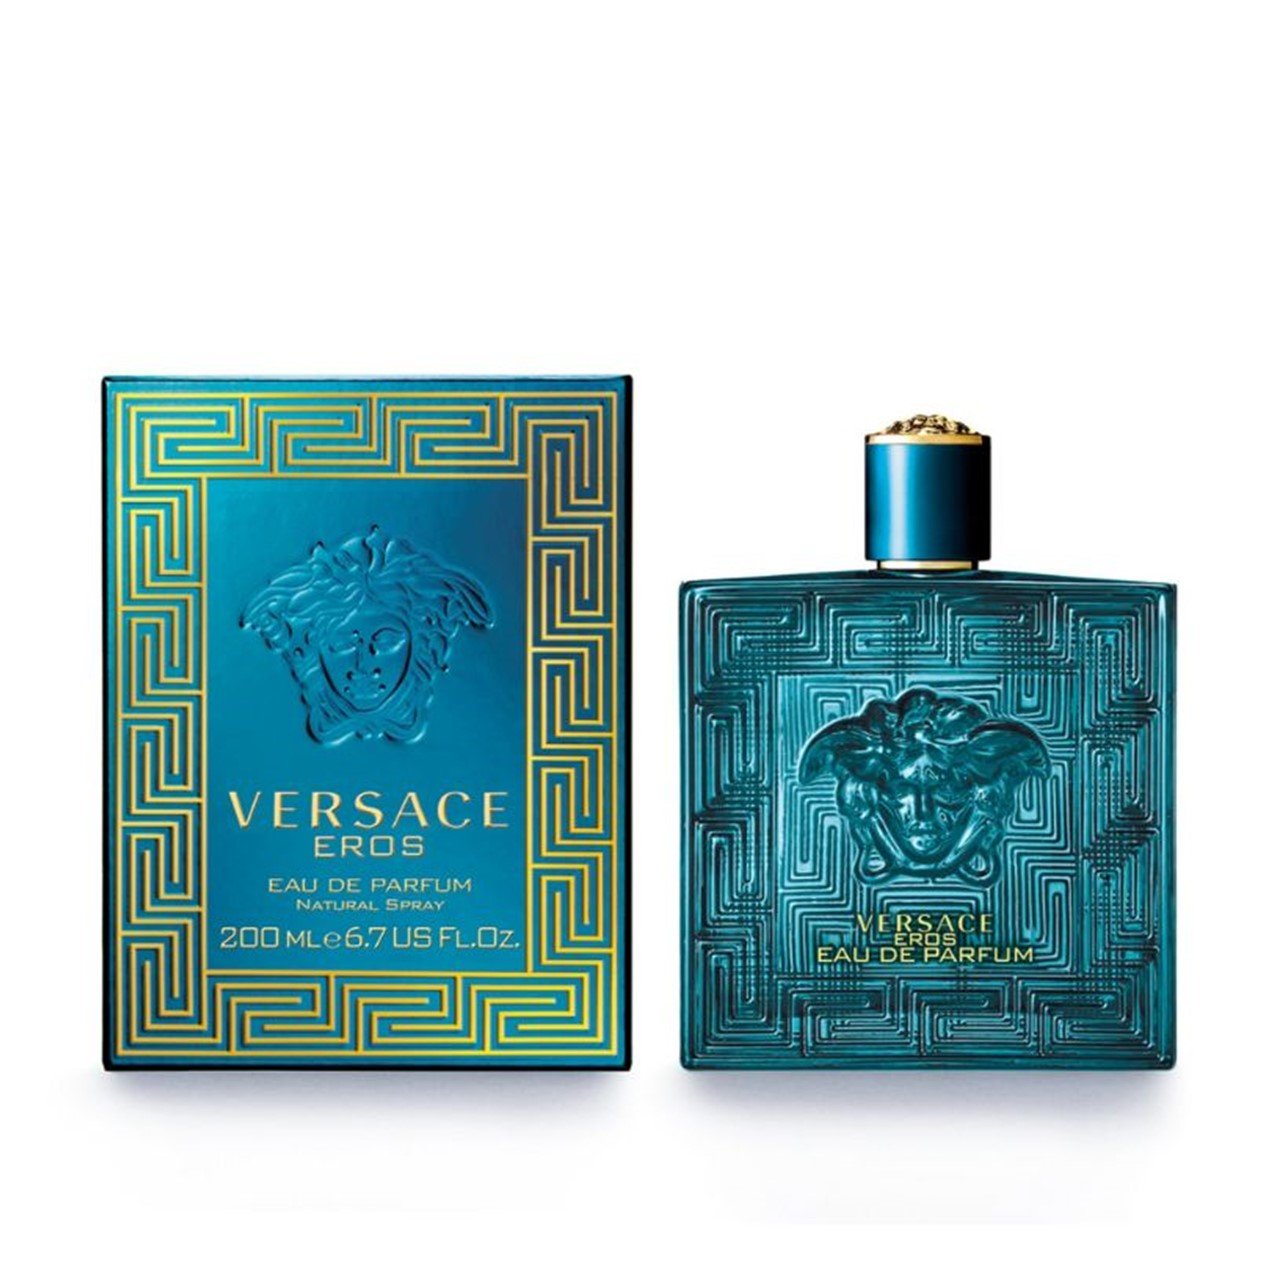 Versace Eros Eau de Parfum 200ml (6.8fl.oz.)